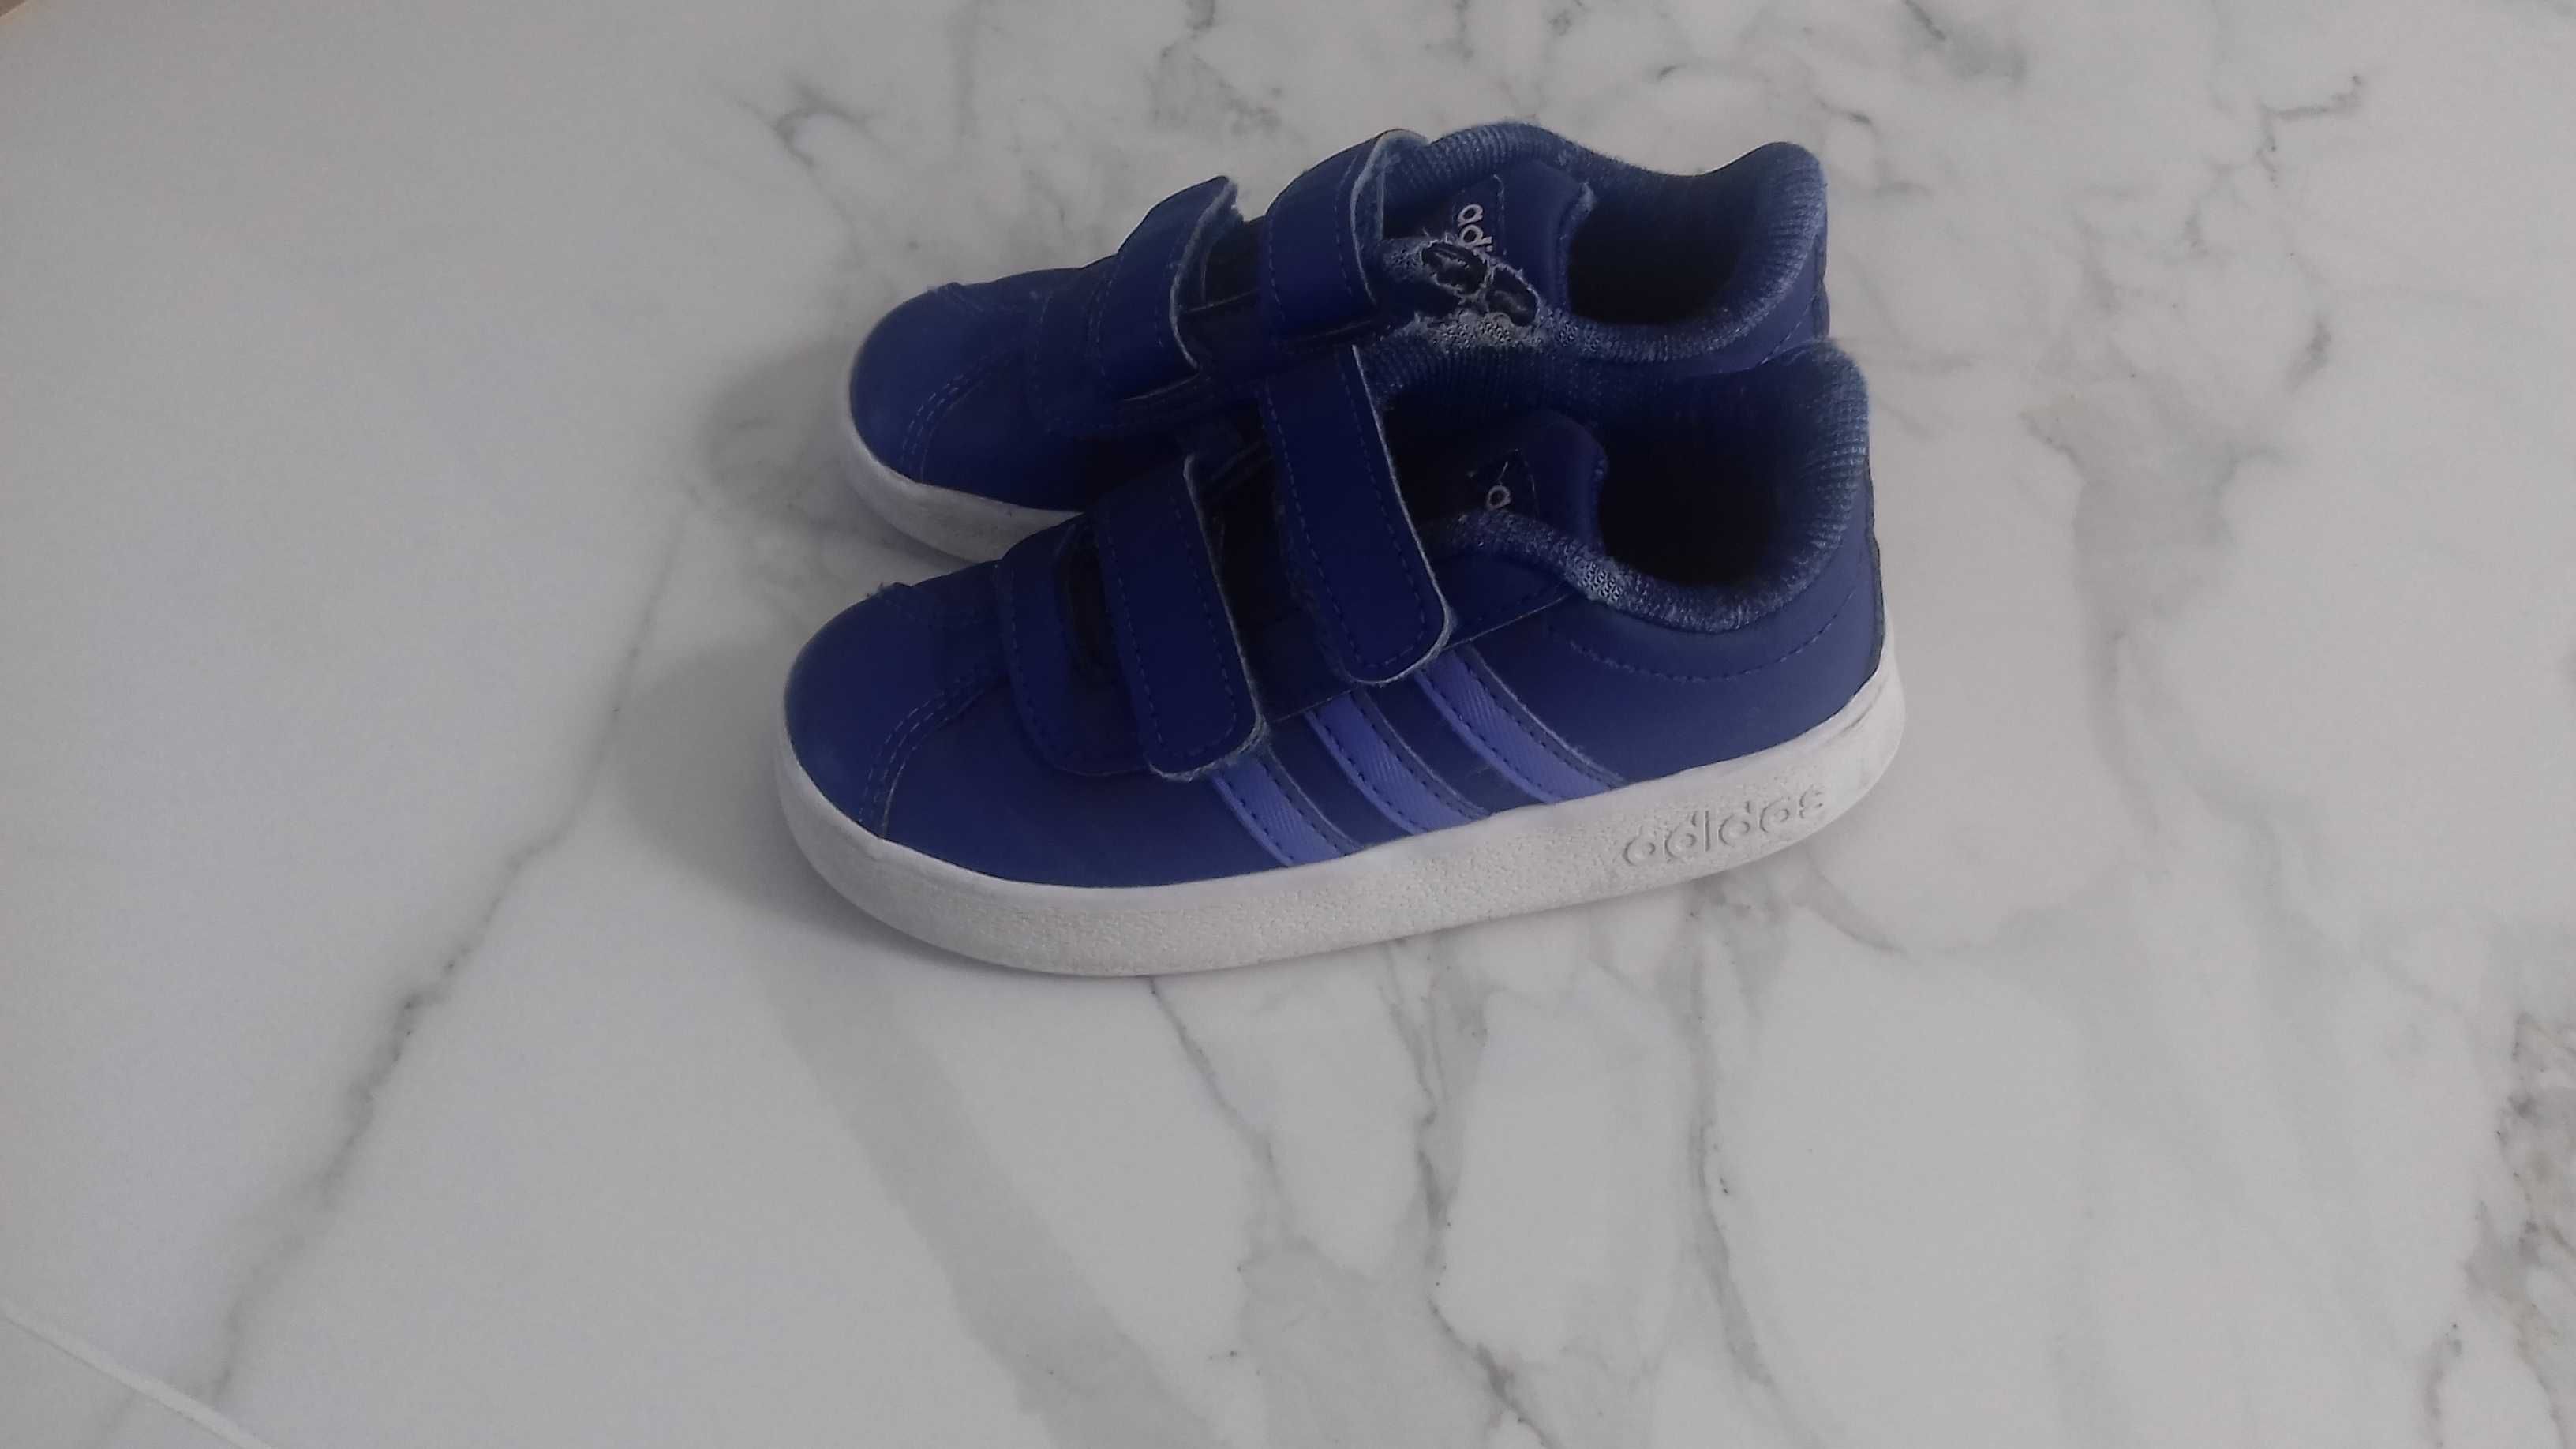 Adidas buty dla chłopca 24